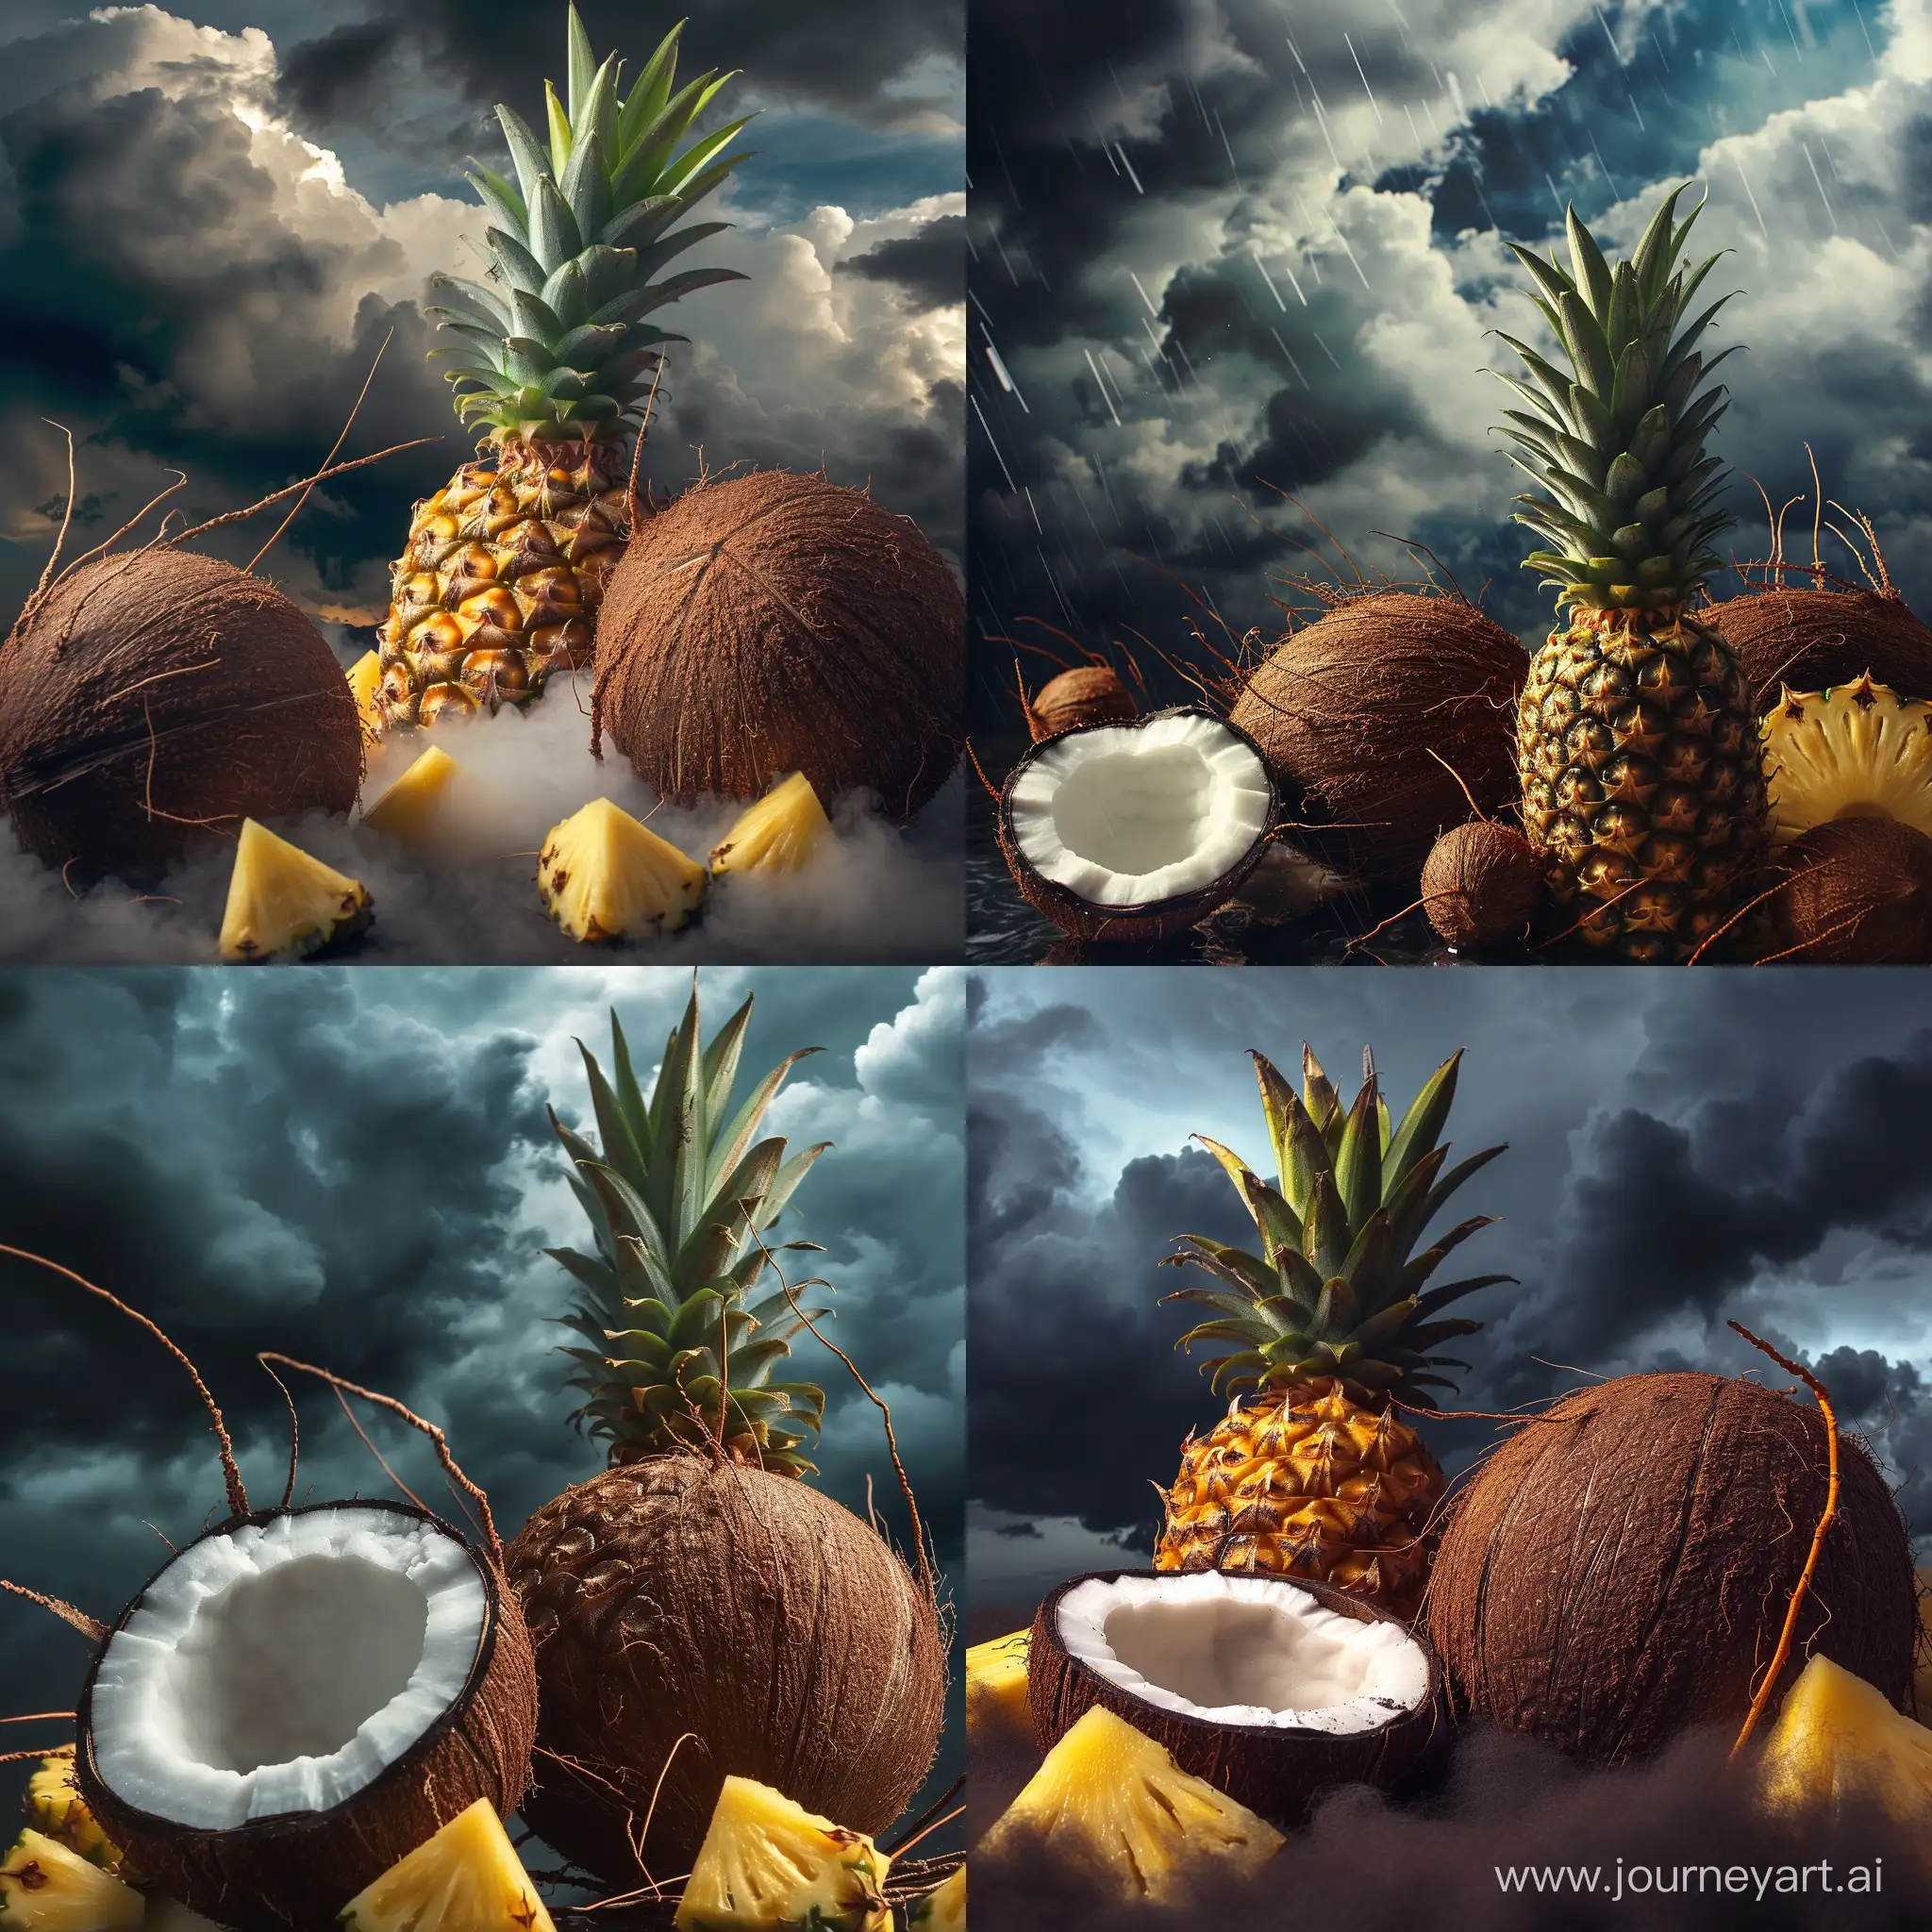 
Сгенерируй фотографию цельных  кокоса и ананаса вместе на фоне темных грозовых облаков в небесах 4k hd